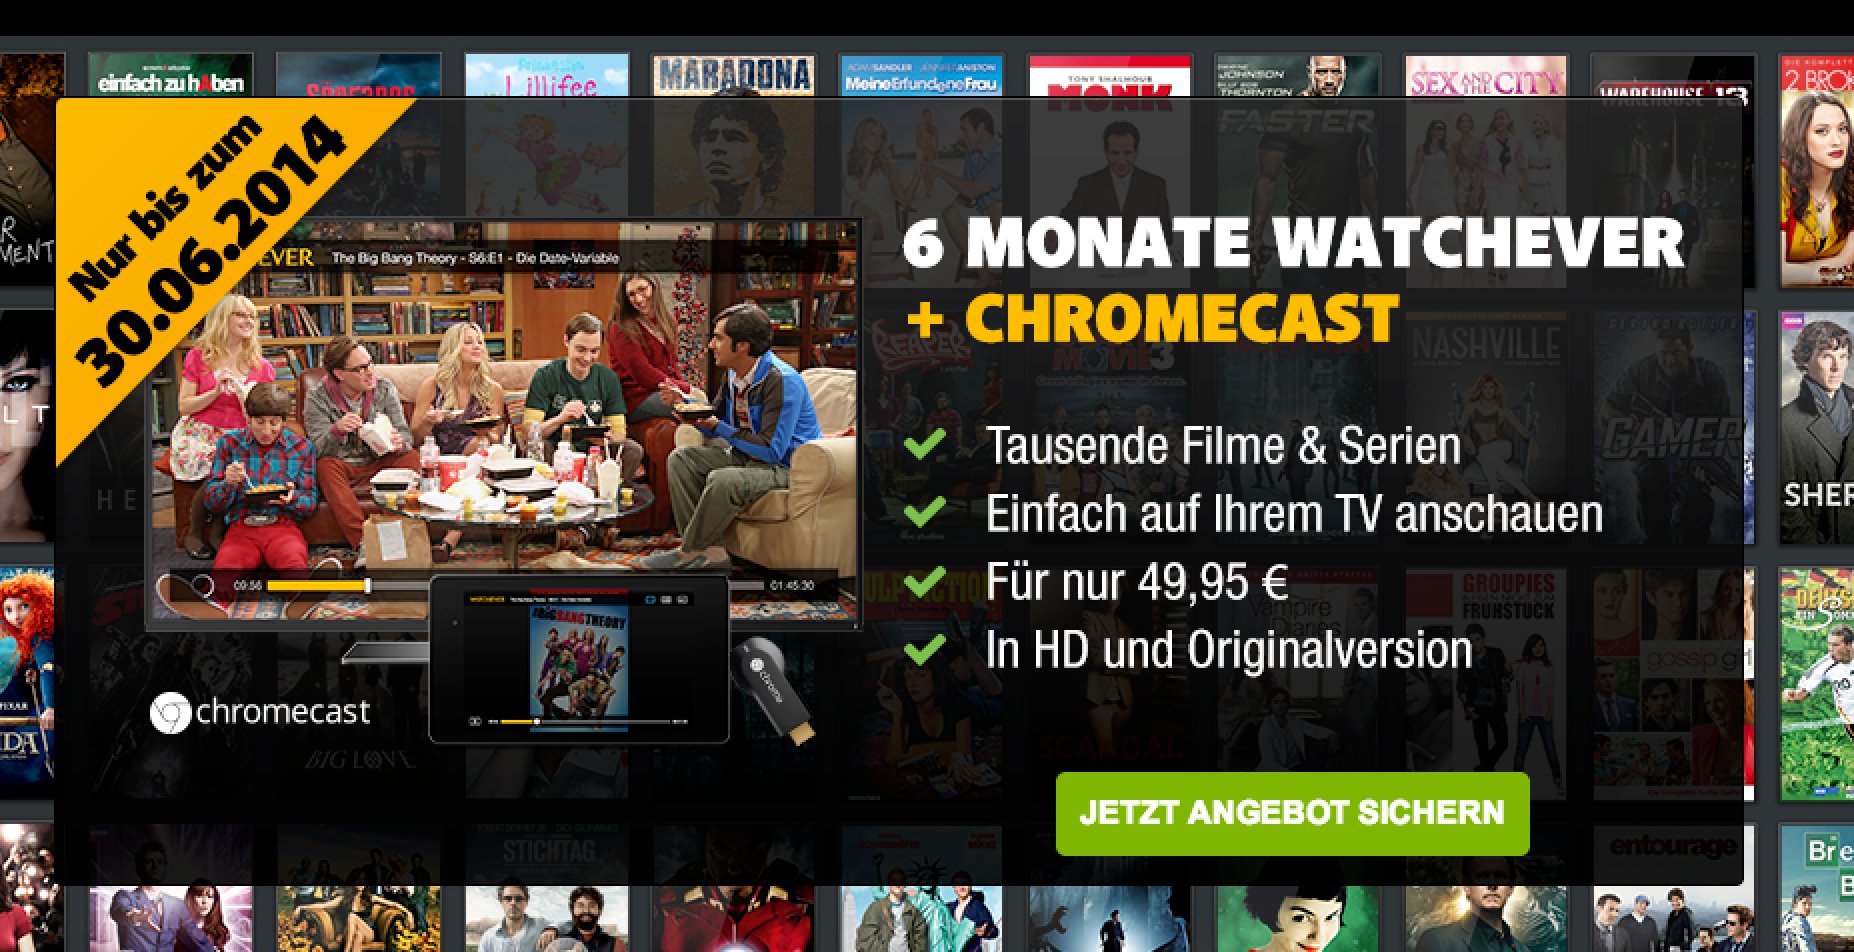 UPDATE: Watchever Aktion mit gratis Chromecast! 9